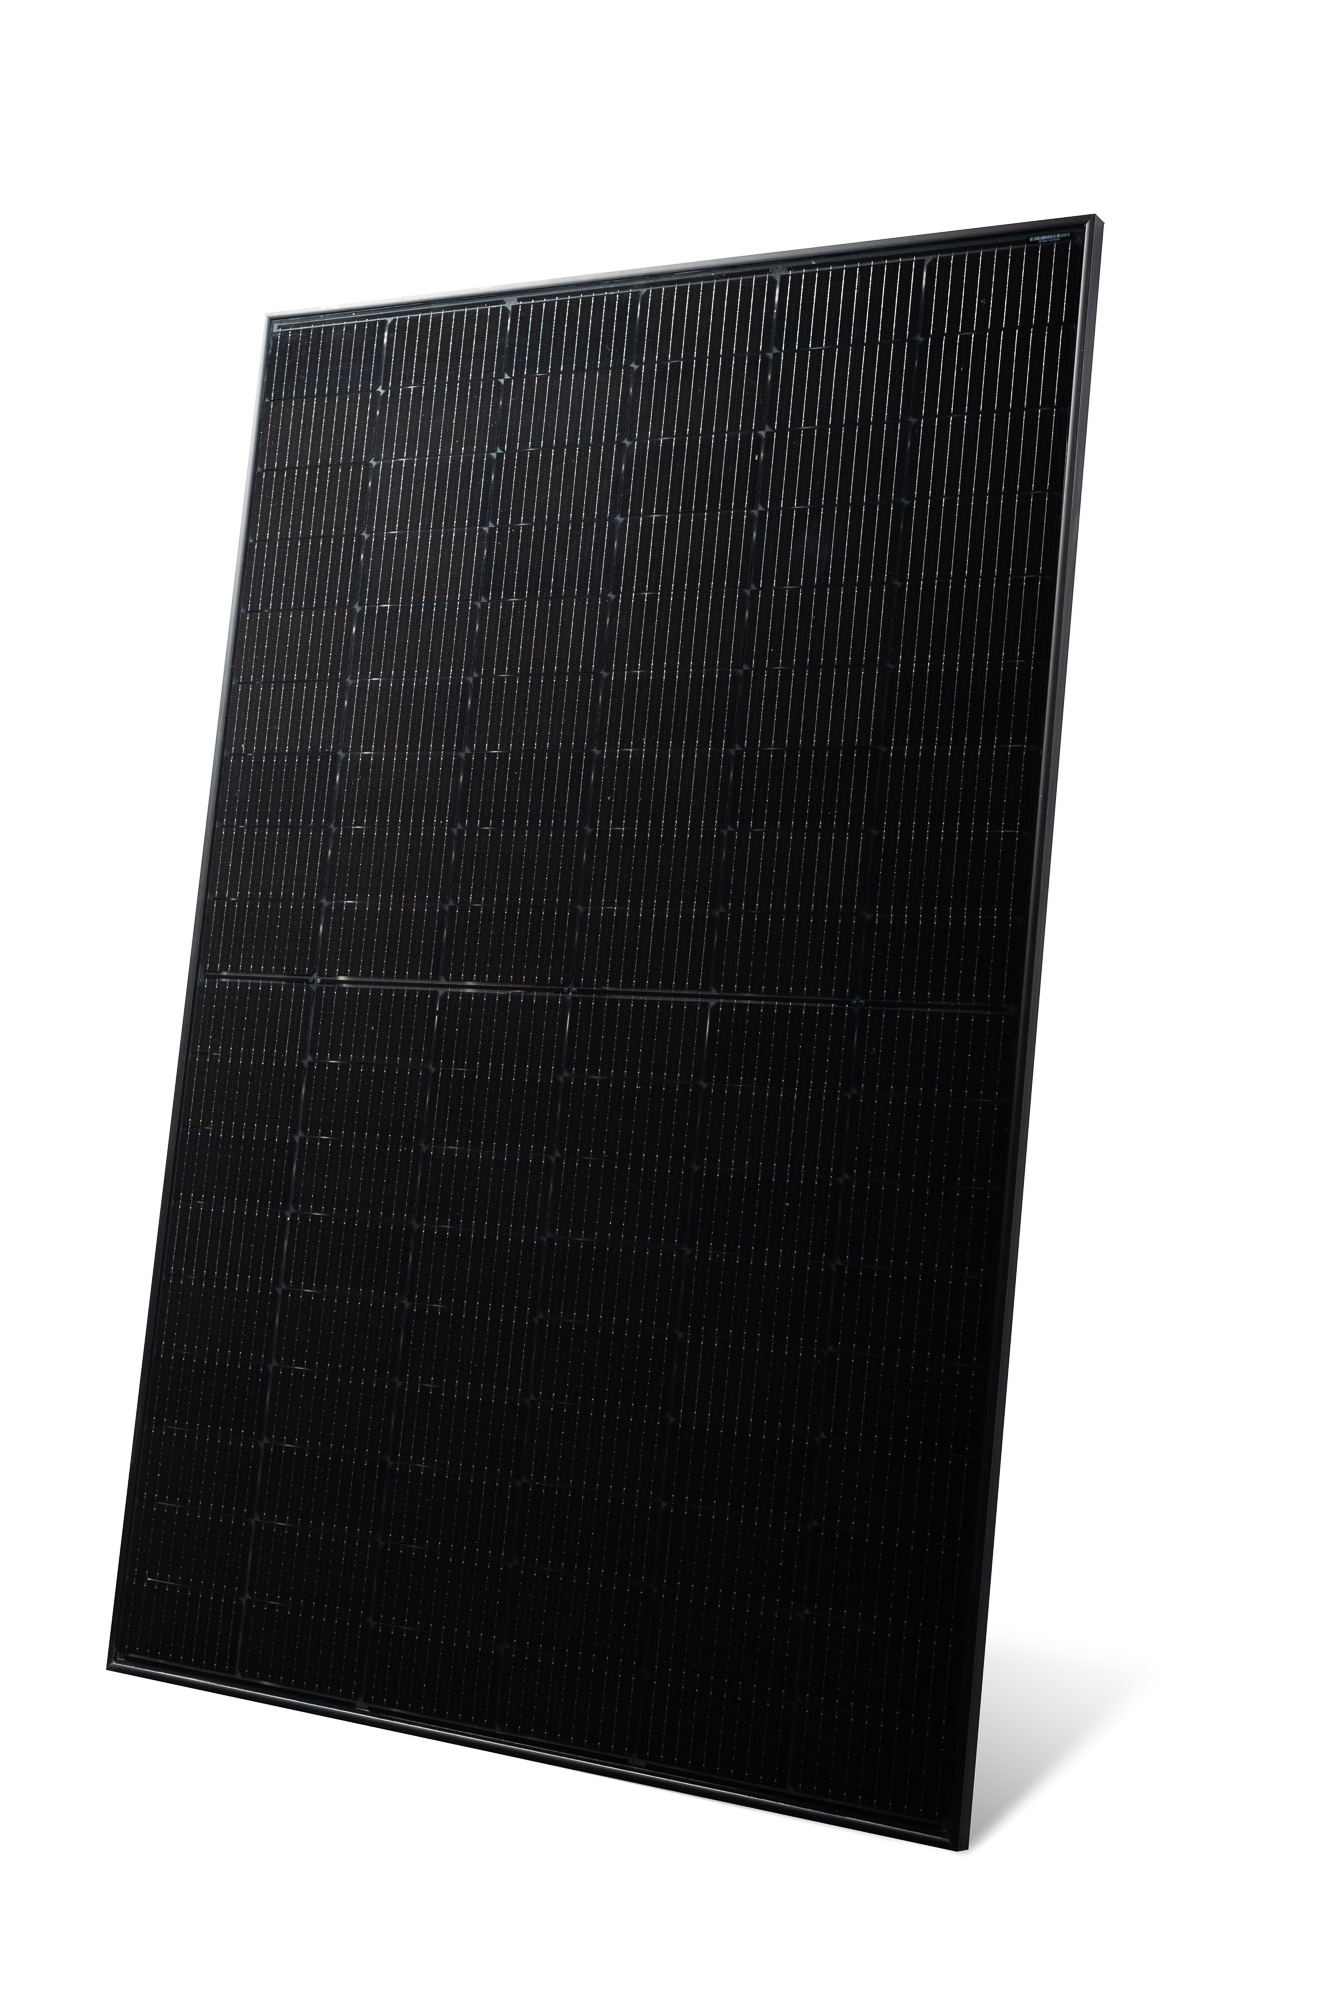 Leicht Seitliche Aufnahme eines Solarmoduls vom Typ AMPERE.SolarPro TG 420